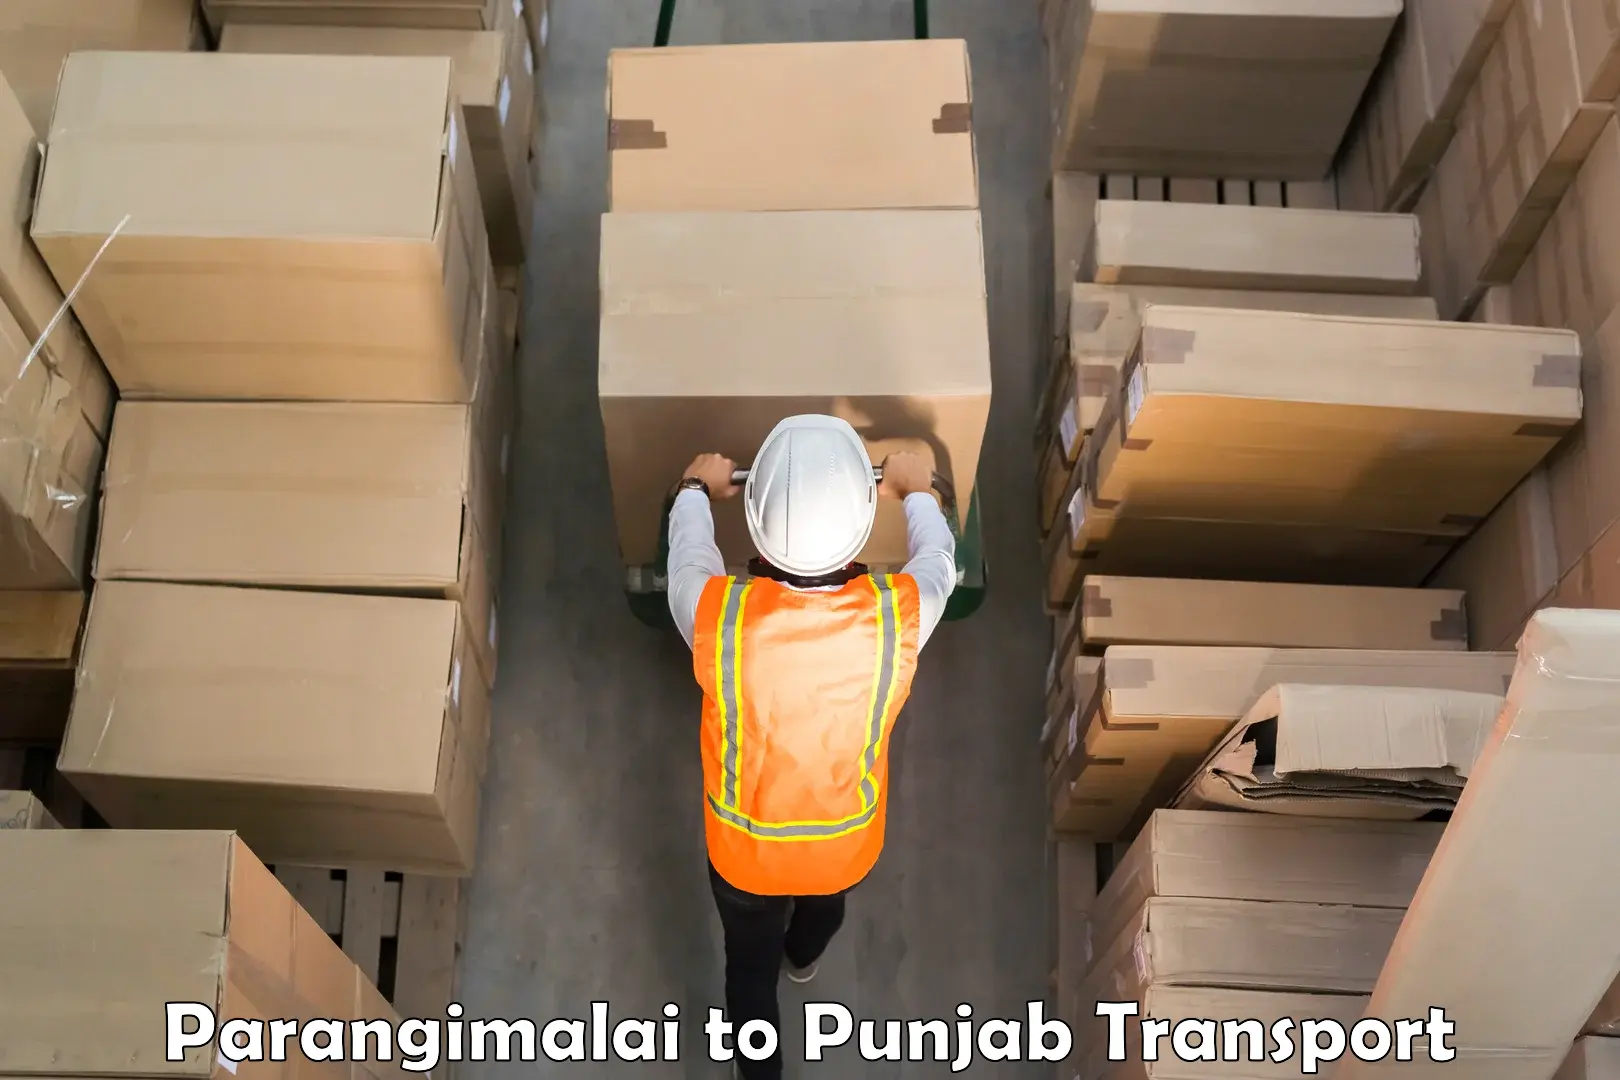 Cargo transport services Parangimalai to Punjab